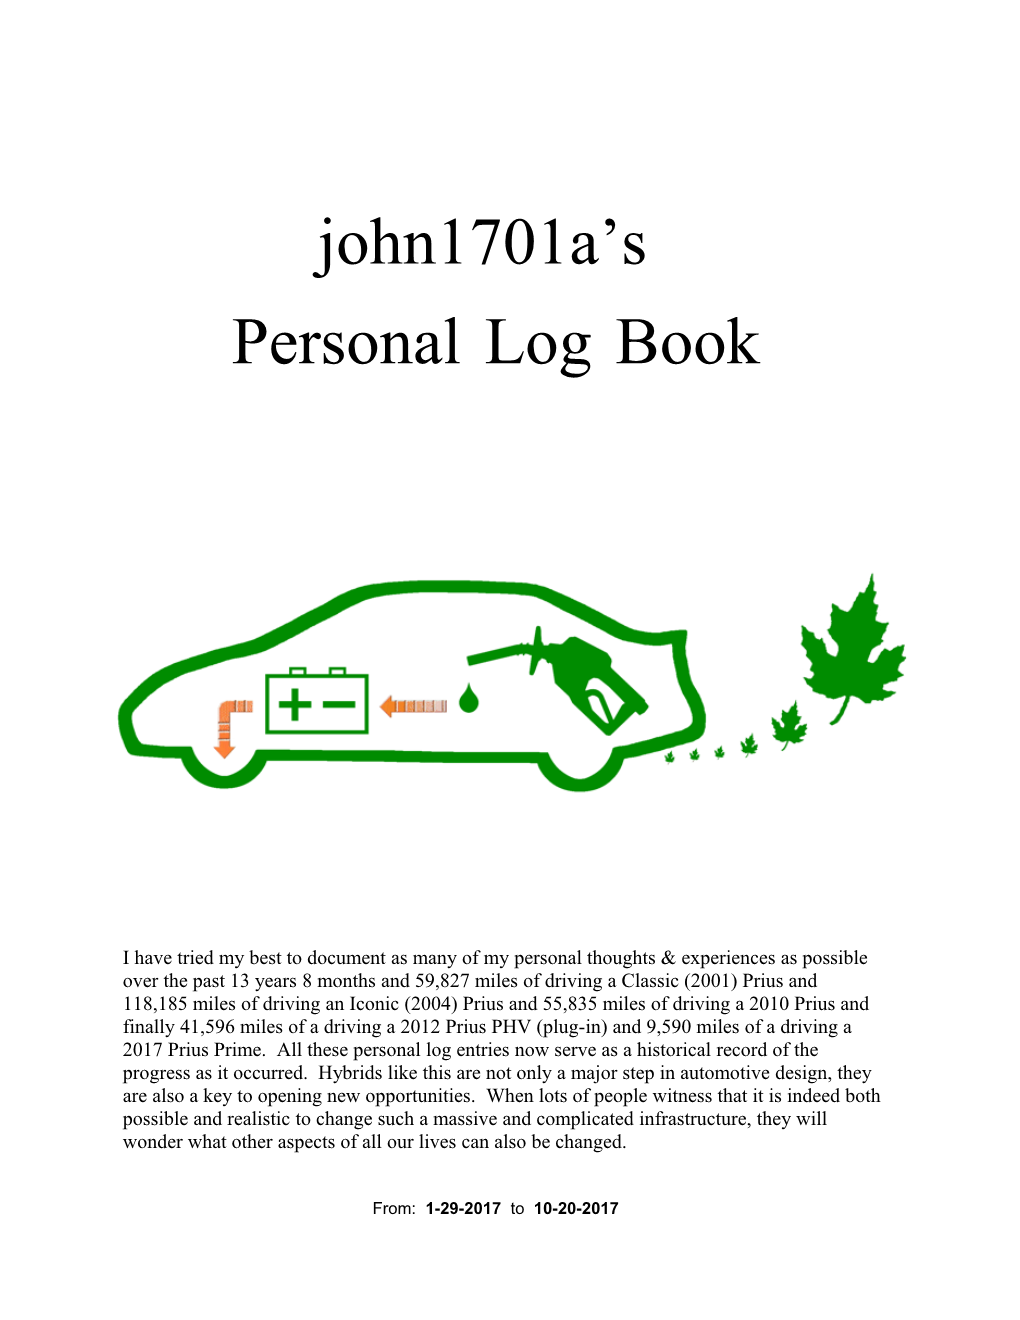 Personal Log Book 3001-3750